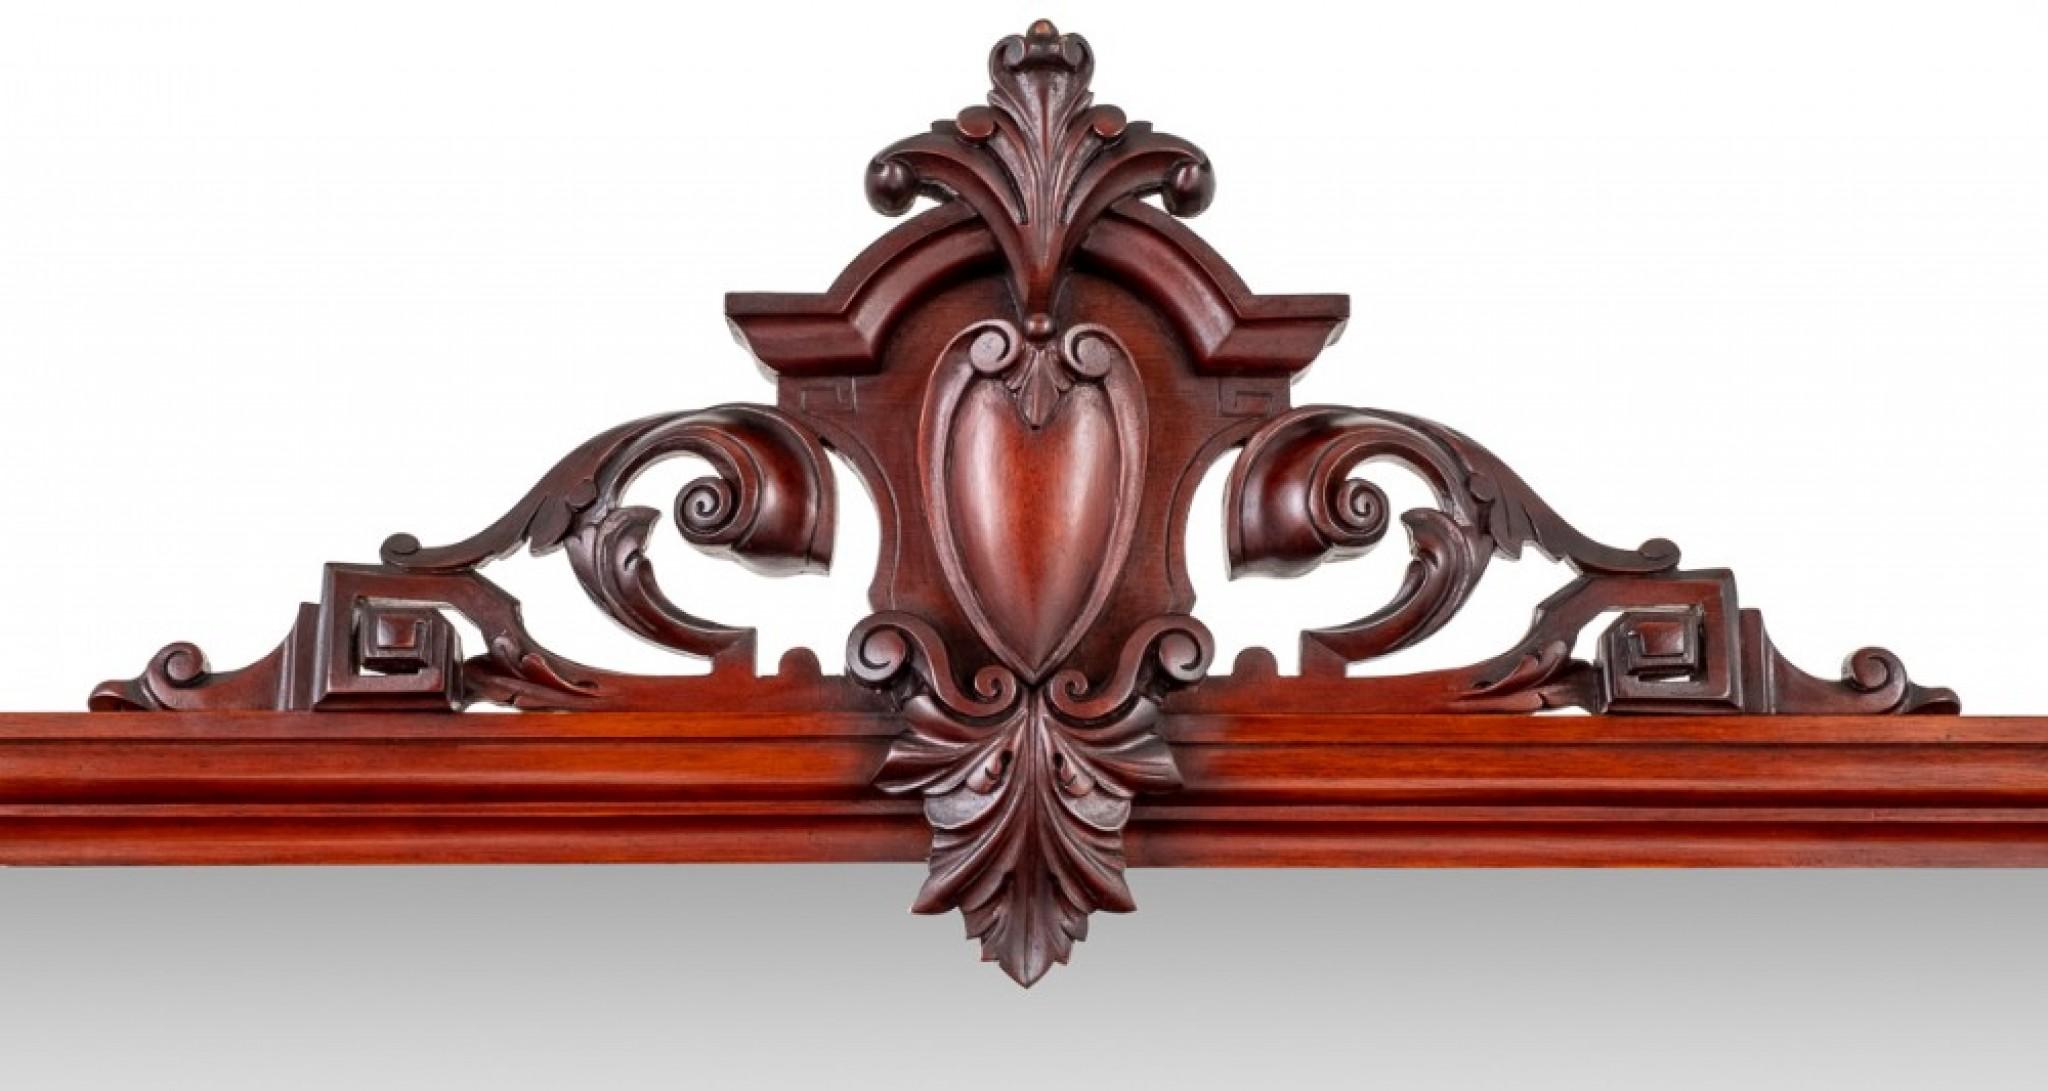 Viktorianisches Mahagoni Sideboard mit 4 Türen.
Dieses Sideboard steht auf einem Sockel.
CIRCA 1860
Das Sideboard hat eine umgekehrte Form.
Die Türen haben bogenförmige Leisten.
Hinter den Türen befinden sich Regale, Schubladen und ein